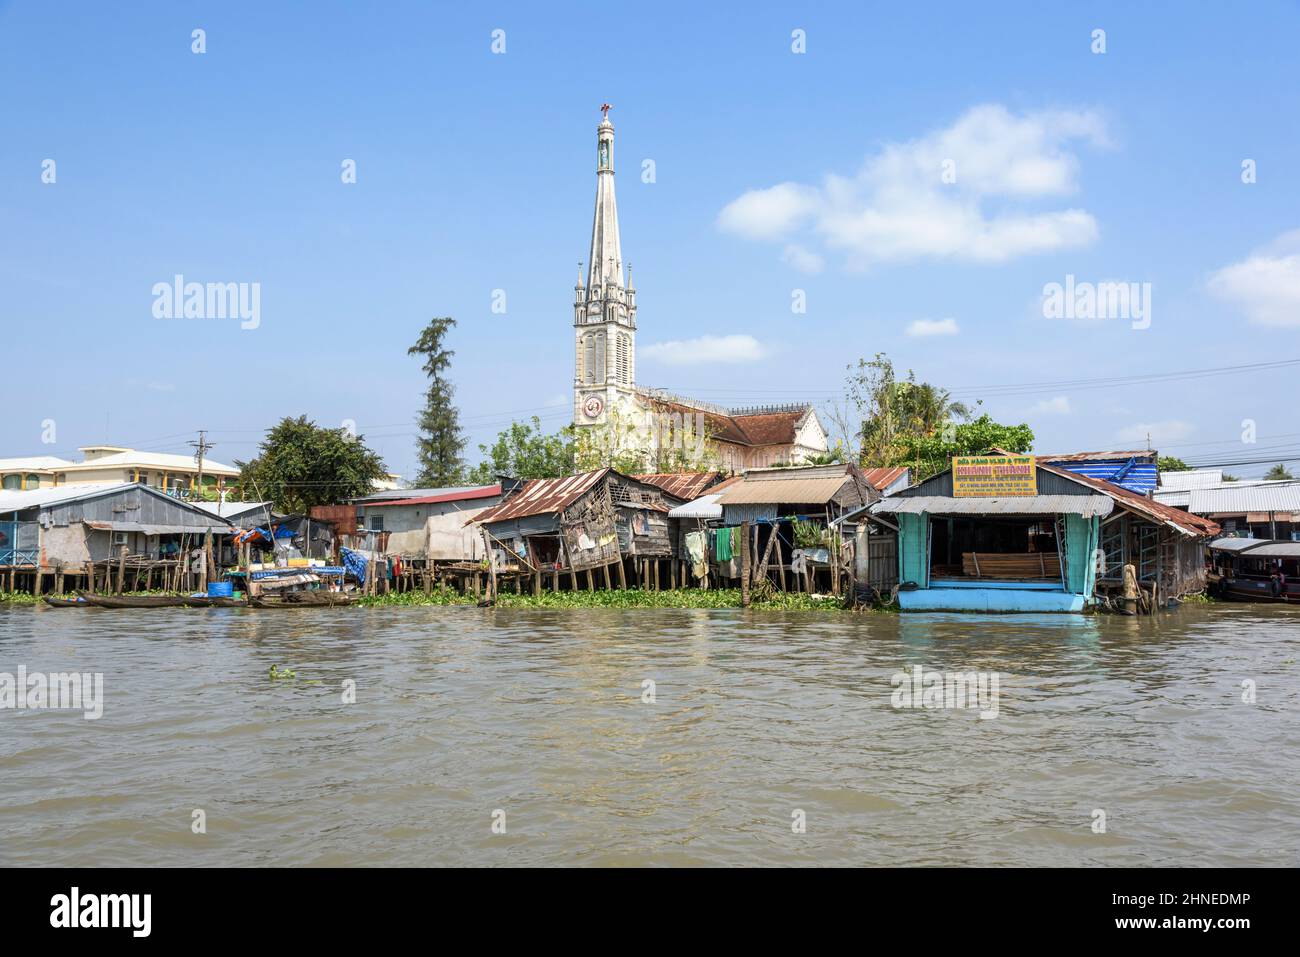 Église en bord de rivière et maisons sur pilotis en bois sur le Mékong à Cai be, province de Tien Giang, delta du Mékong, sud du Vietnam, Asie du Sud-est Banque D'Images